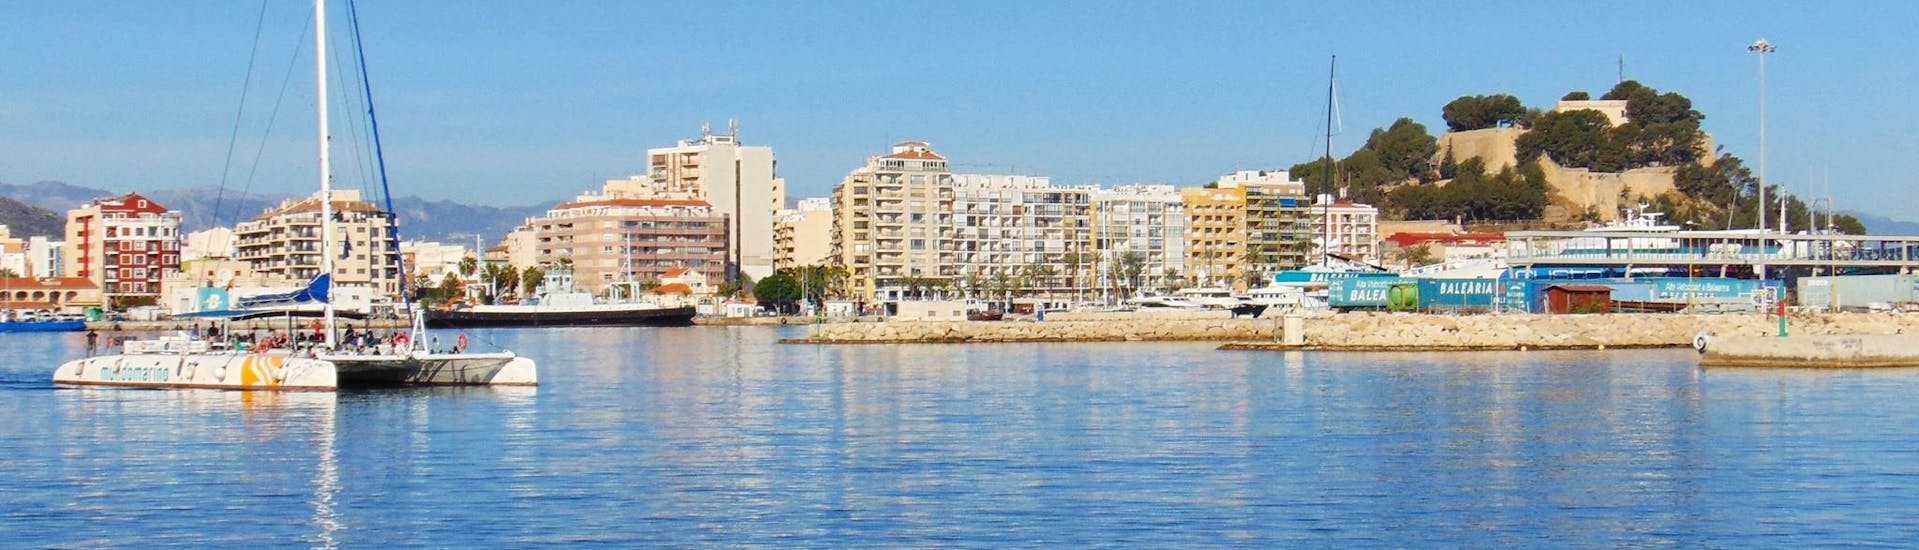 El elegante y moderno catamarán de vela ecológico navega frente al hermoso Puerto de Málaga durante un día completo de viaje en barco desde Málaga a lo largo de la Costa del Sol con Mundo Marino Costa del Sol.